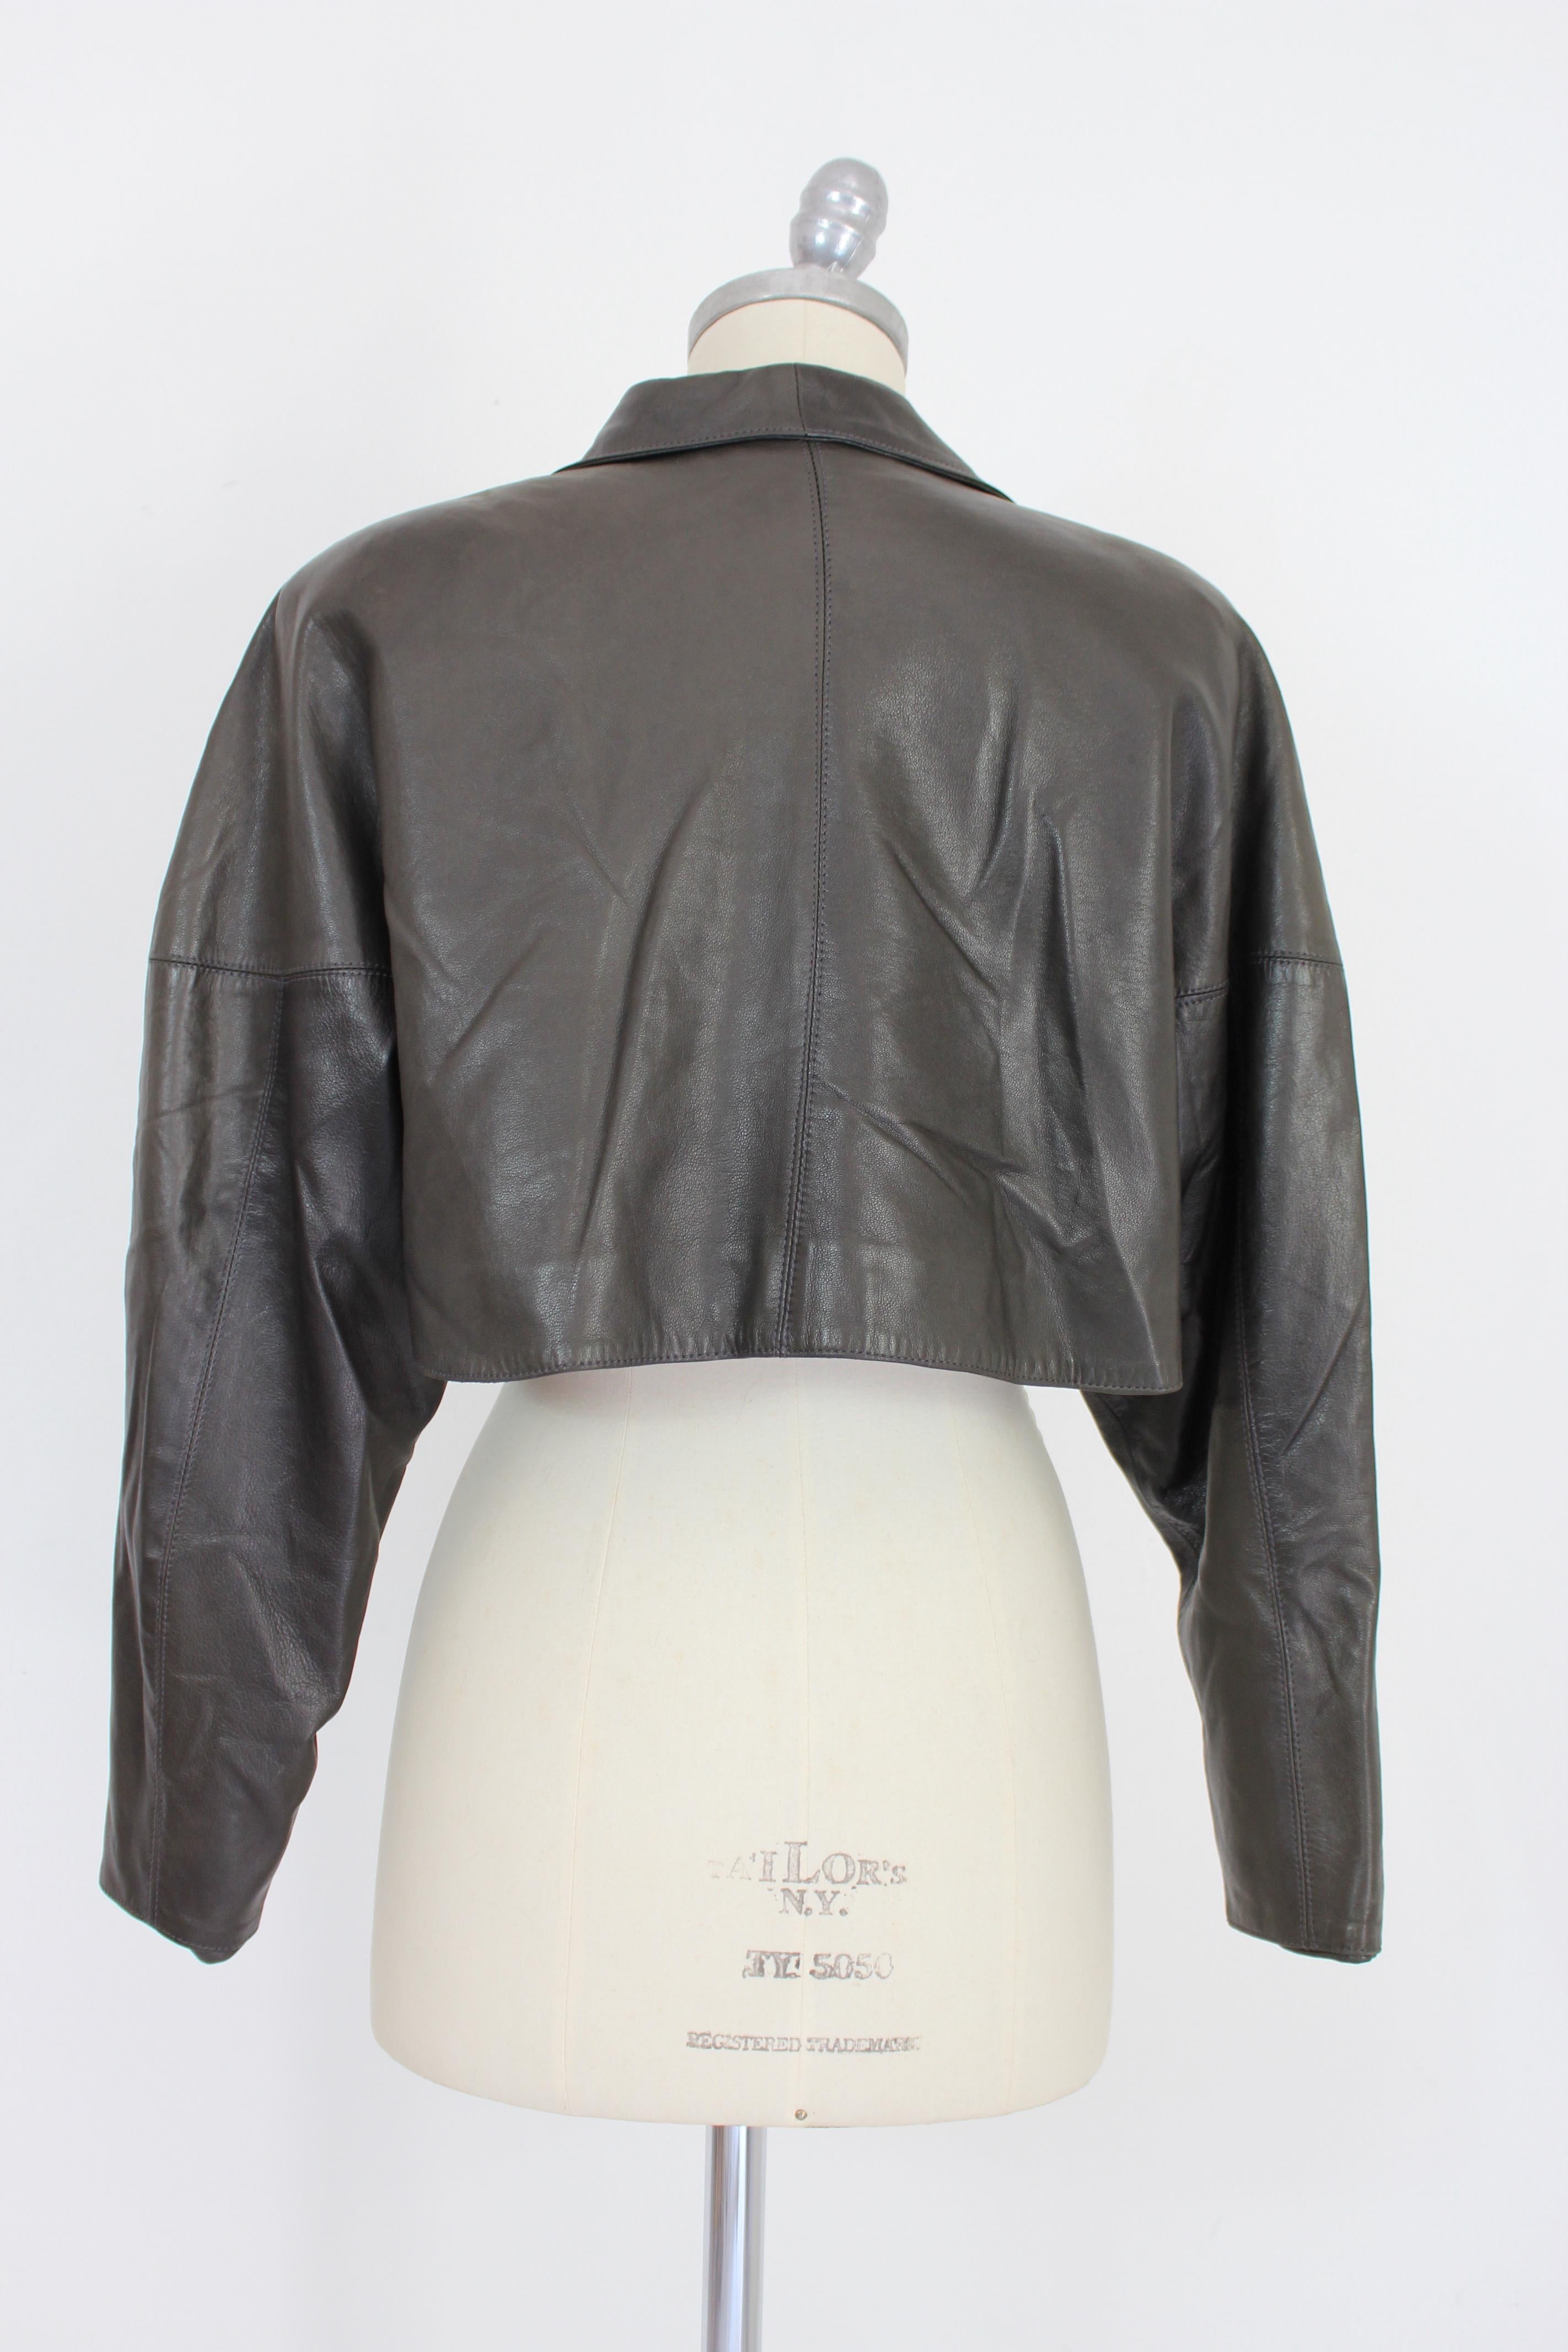 La veste en cuir Azzedine Alaia est une pièce emblématique du vintage des années 1980. Cette veste de style boléro est fabriquée en cuir souple de haute qualité et présente un design noir élégant, à la fois intemporel et polyvalent. Avec ses lignes